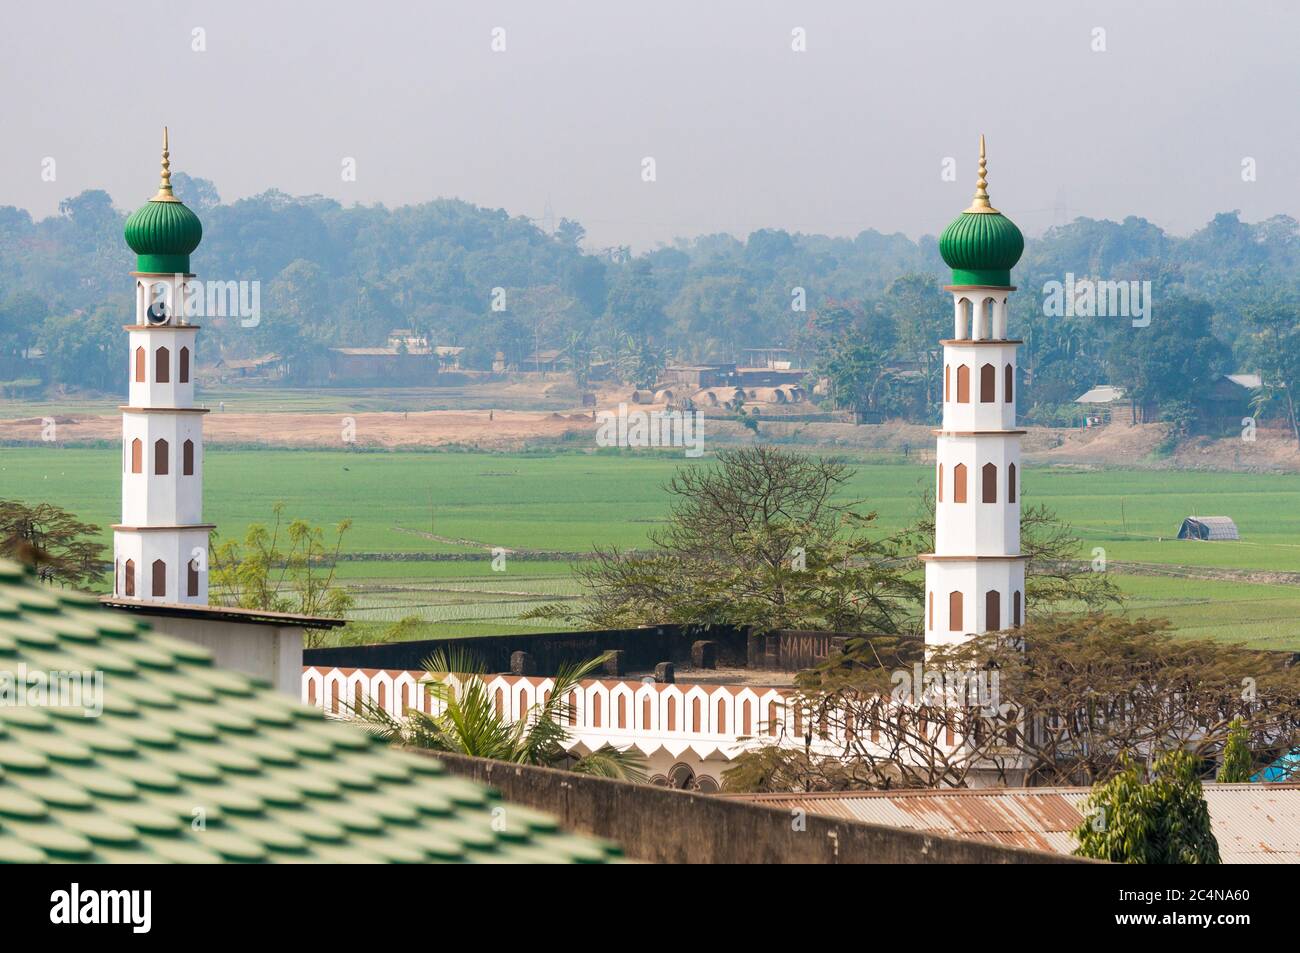 Paesaggio del villaggio indiano di Assam con minareti bianchi di moschea e giungla distante. Foto Stock